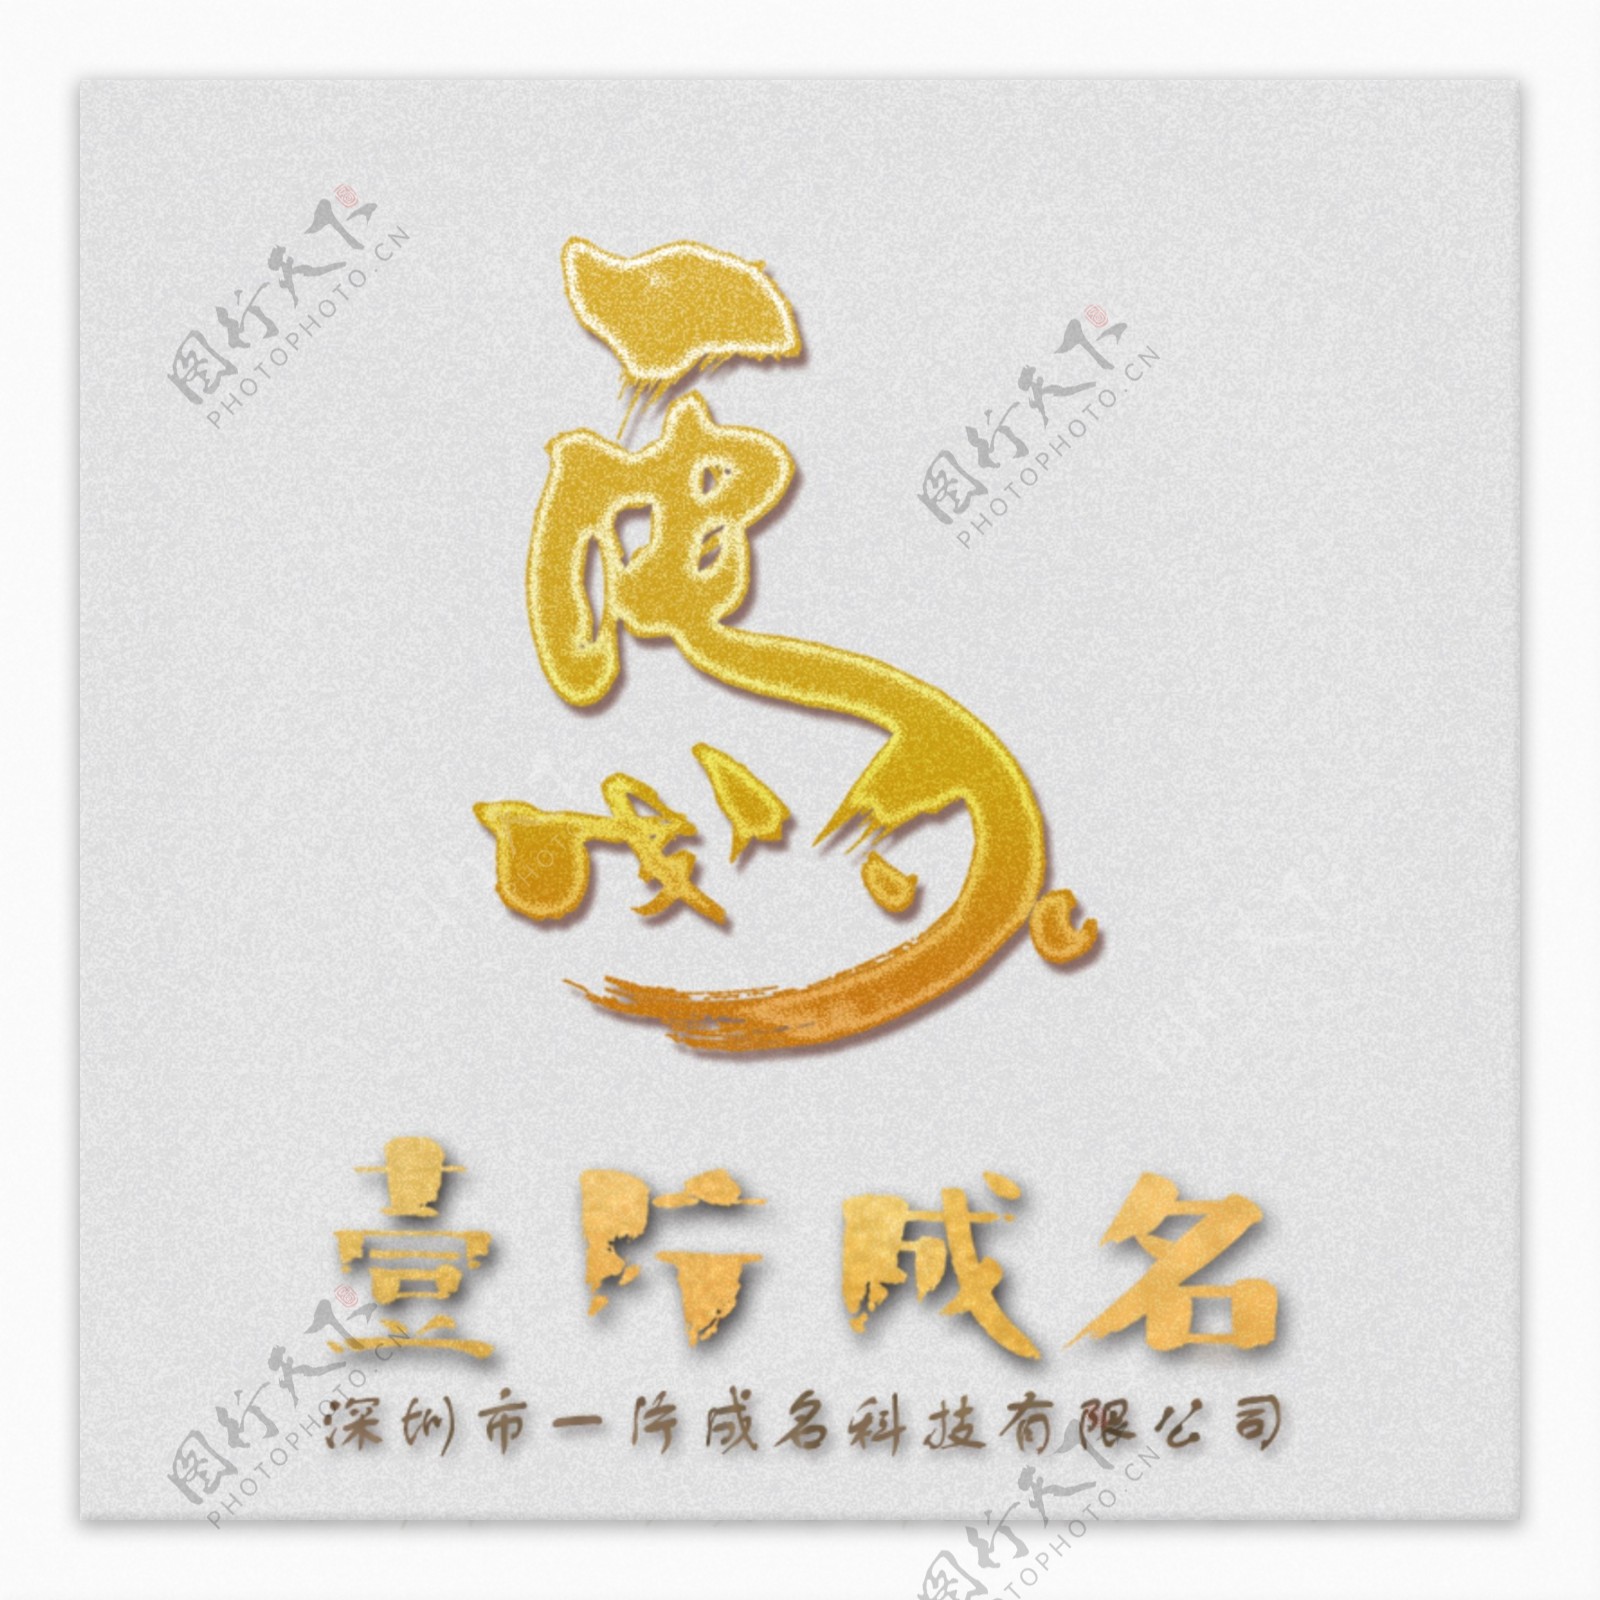 深圳市一片成名科技有限公司logo设计